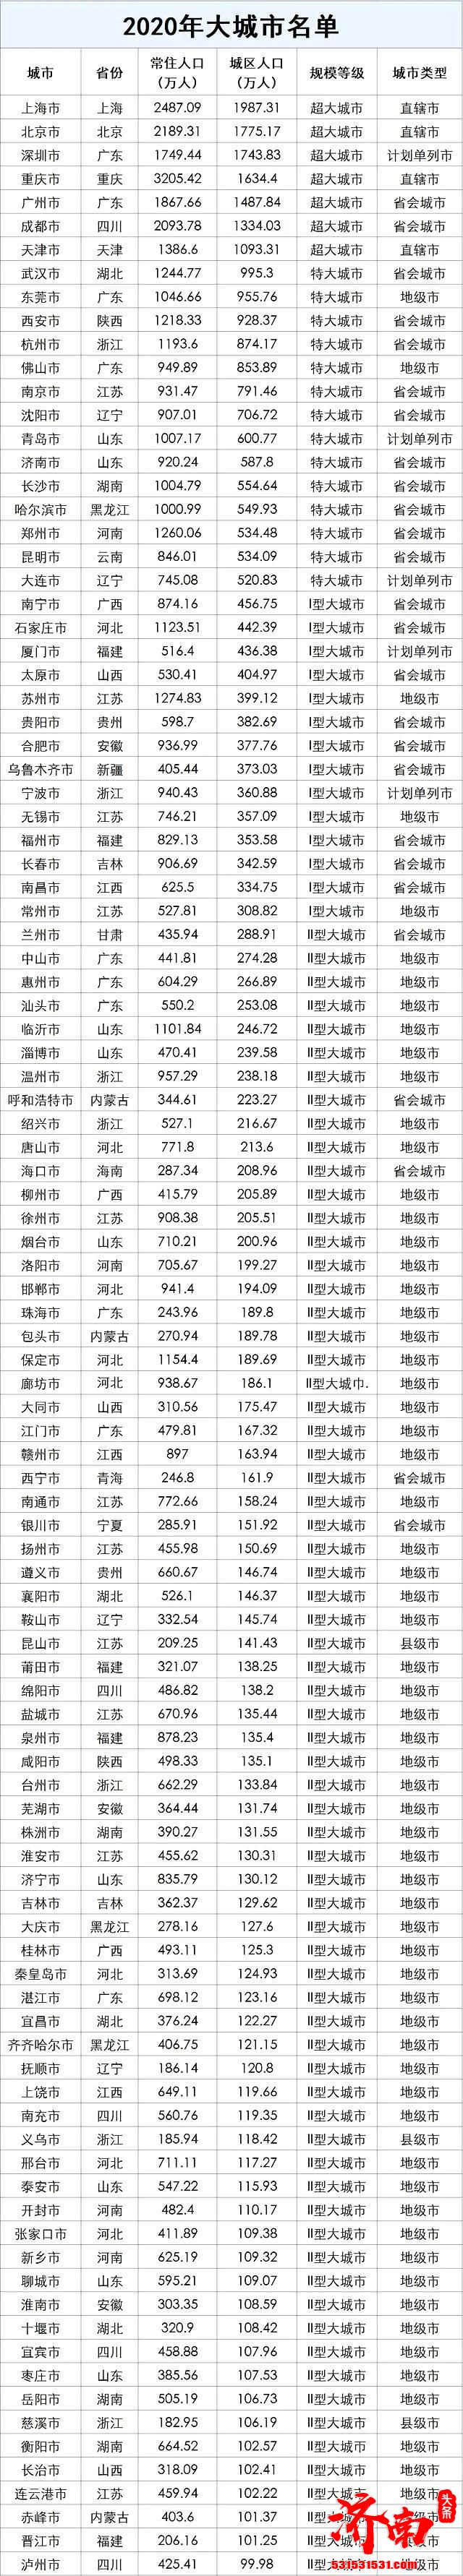 江苏昆山GDP4748.06亿元 位居2021年GDP十强县榜首